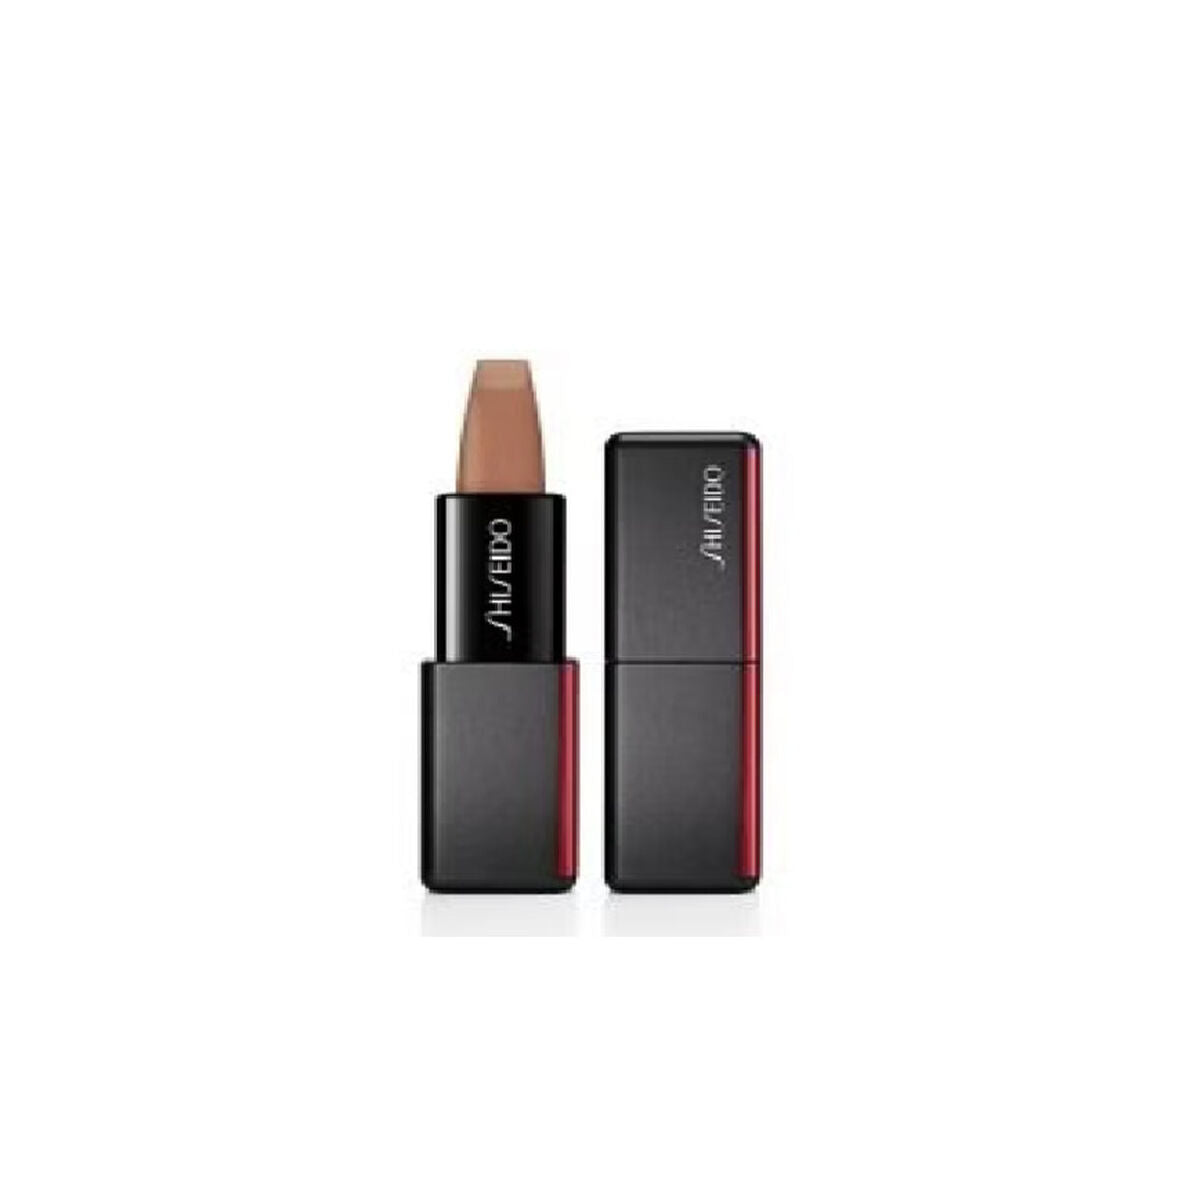 Technosatina Shiseido Balm Balmina 3,3 g Nº 405